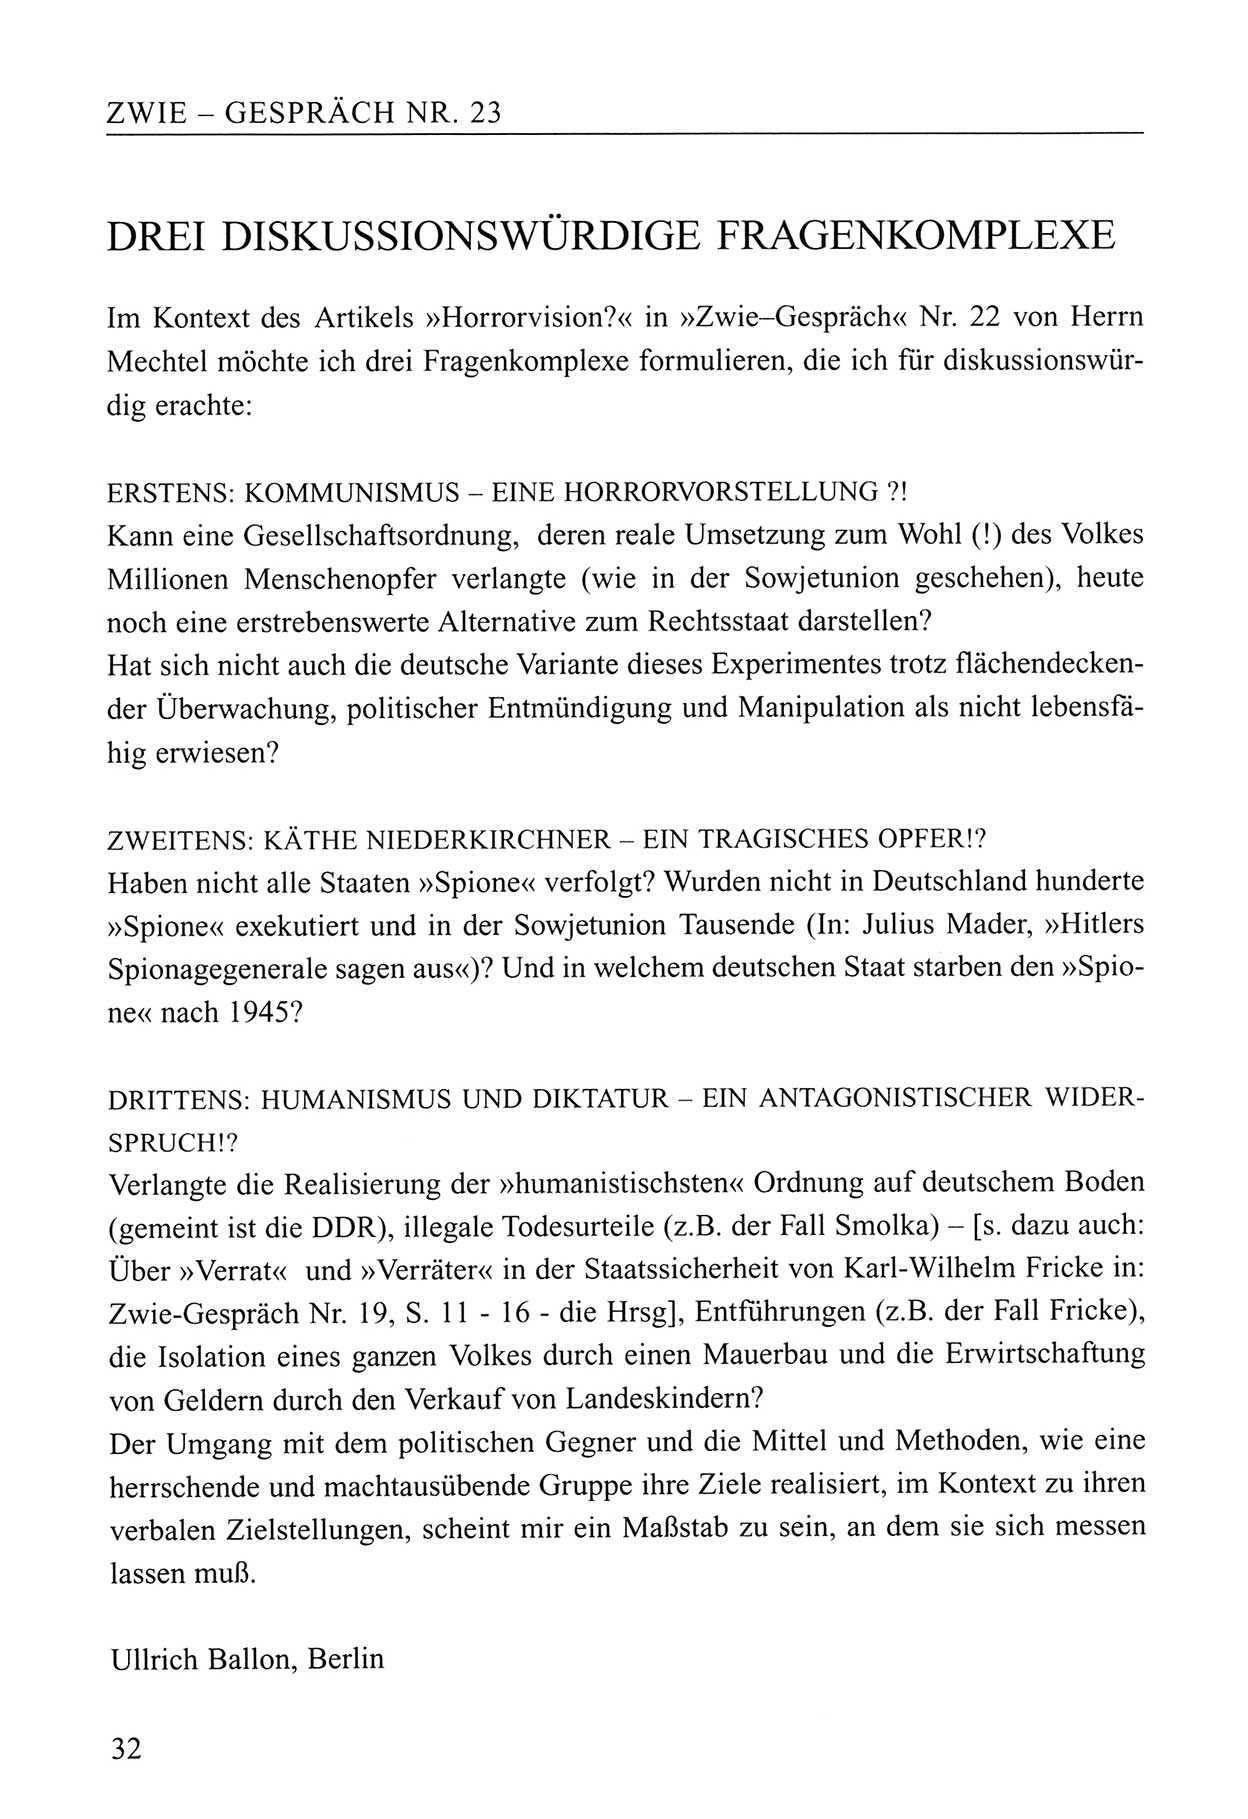 Zwie-Gespräch, Beiträge zum Umgang mit der Staatssicherheits-Vergangenheit [Deutsche Demokratische Republik (DDR)], Ausgabe Nr. 23, Berlin 1994, Seite 32 (Zwie-Gespr. Ausg. 23 1994, S. 32)